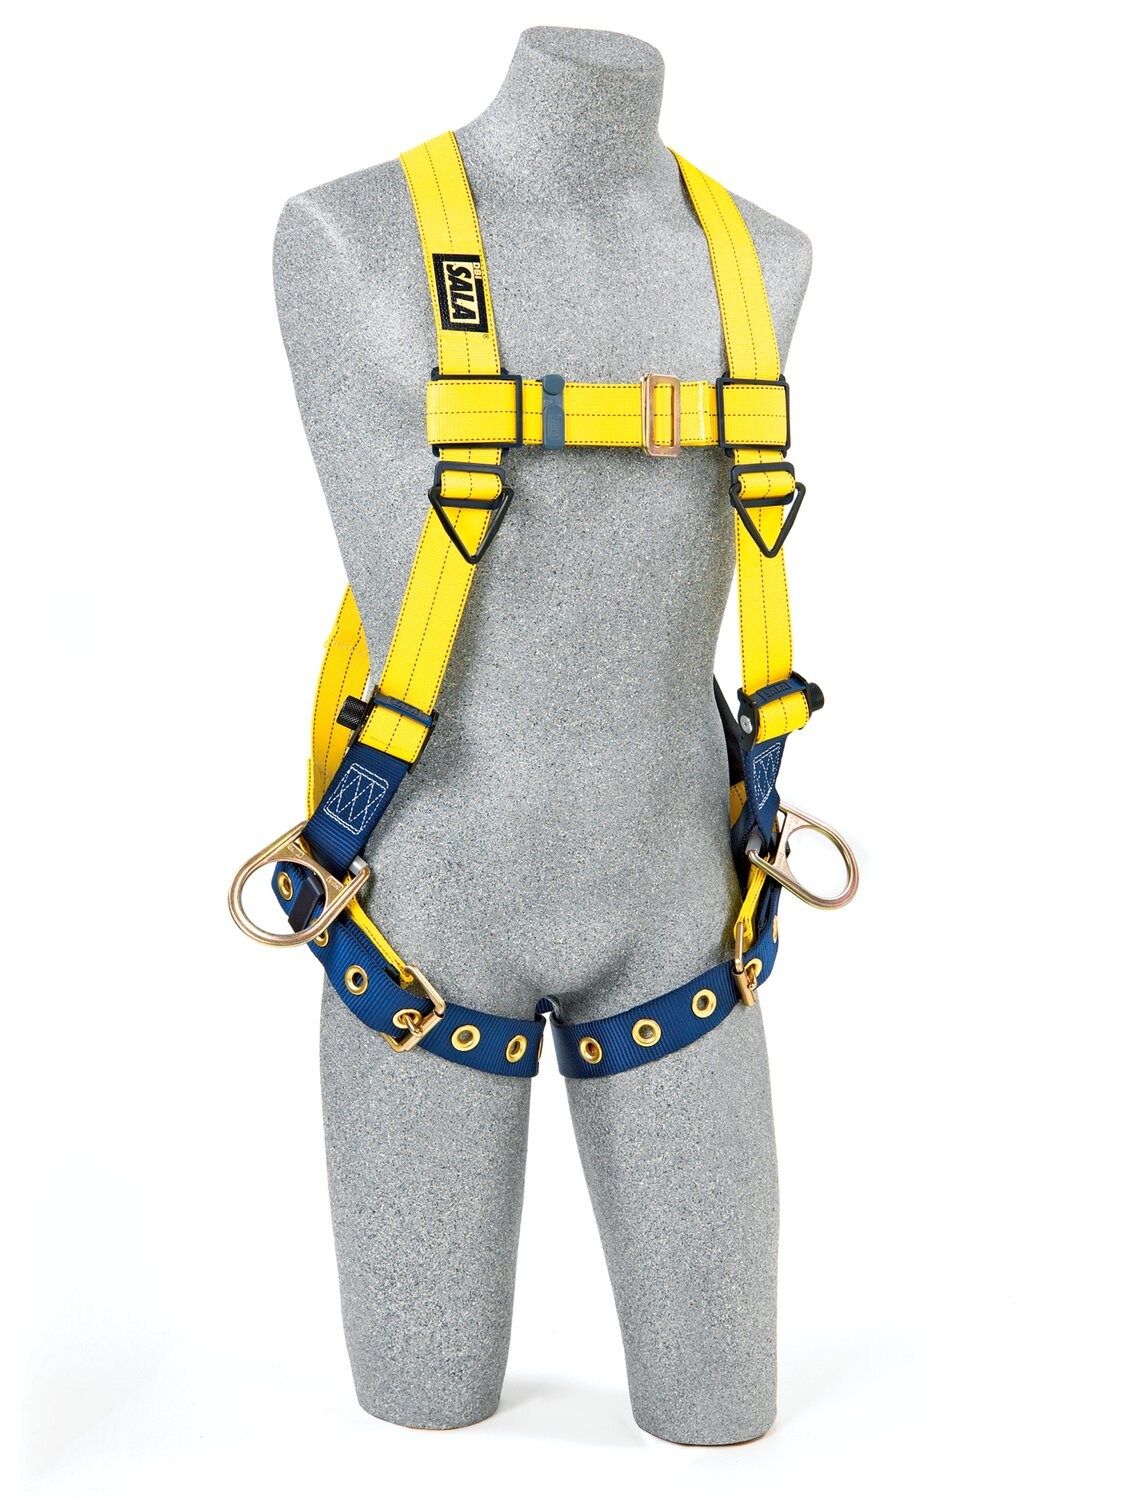 7012815500 - 3M DBI-SALA Delta Vest Positioning Safety Harness 1104878, Large